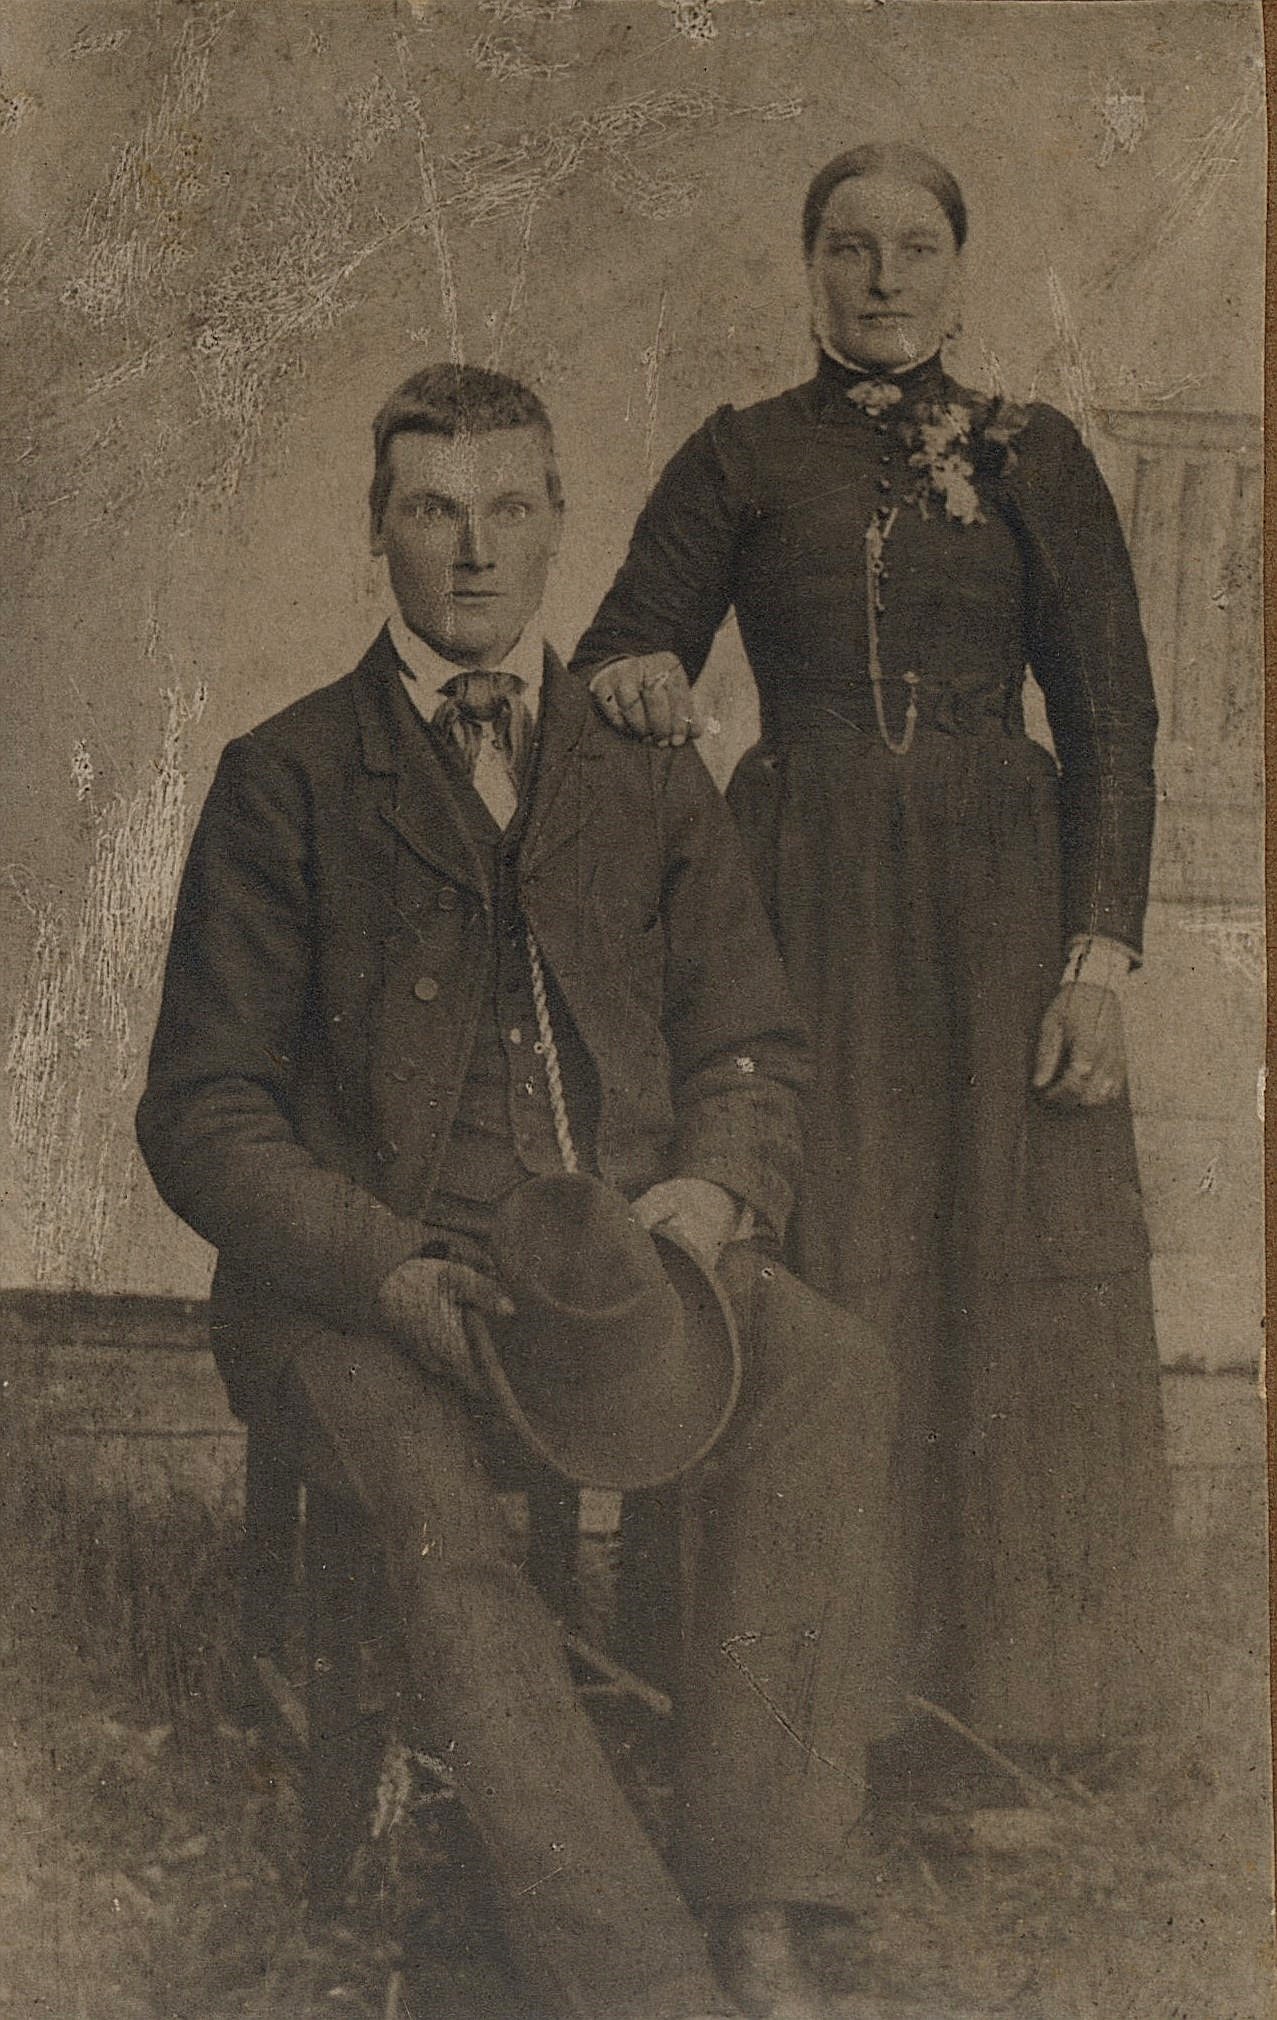 På bilden Artur Mitts pappa Karl Henrik Mitts och hans första hustru Amanda f. Äbb. Efter Amandas död emigrerade Karl Henrik till Amerika och var där i många år men återvände sedan i slutet på 1920-talet och flyttade till Kias-kroken i Dagsmark. Han kallades vanligtvis för "Viiras-Kaalhindrik".